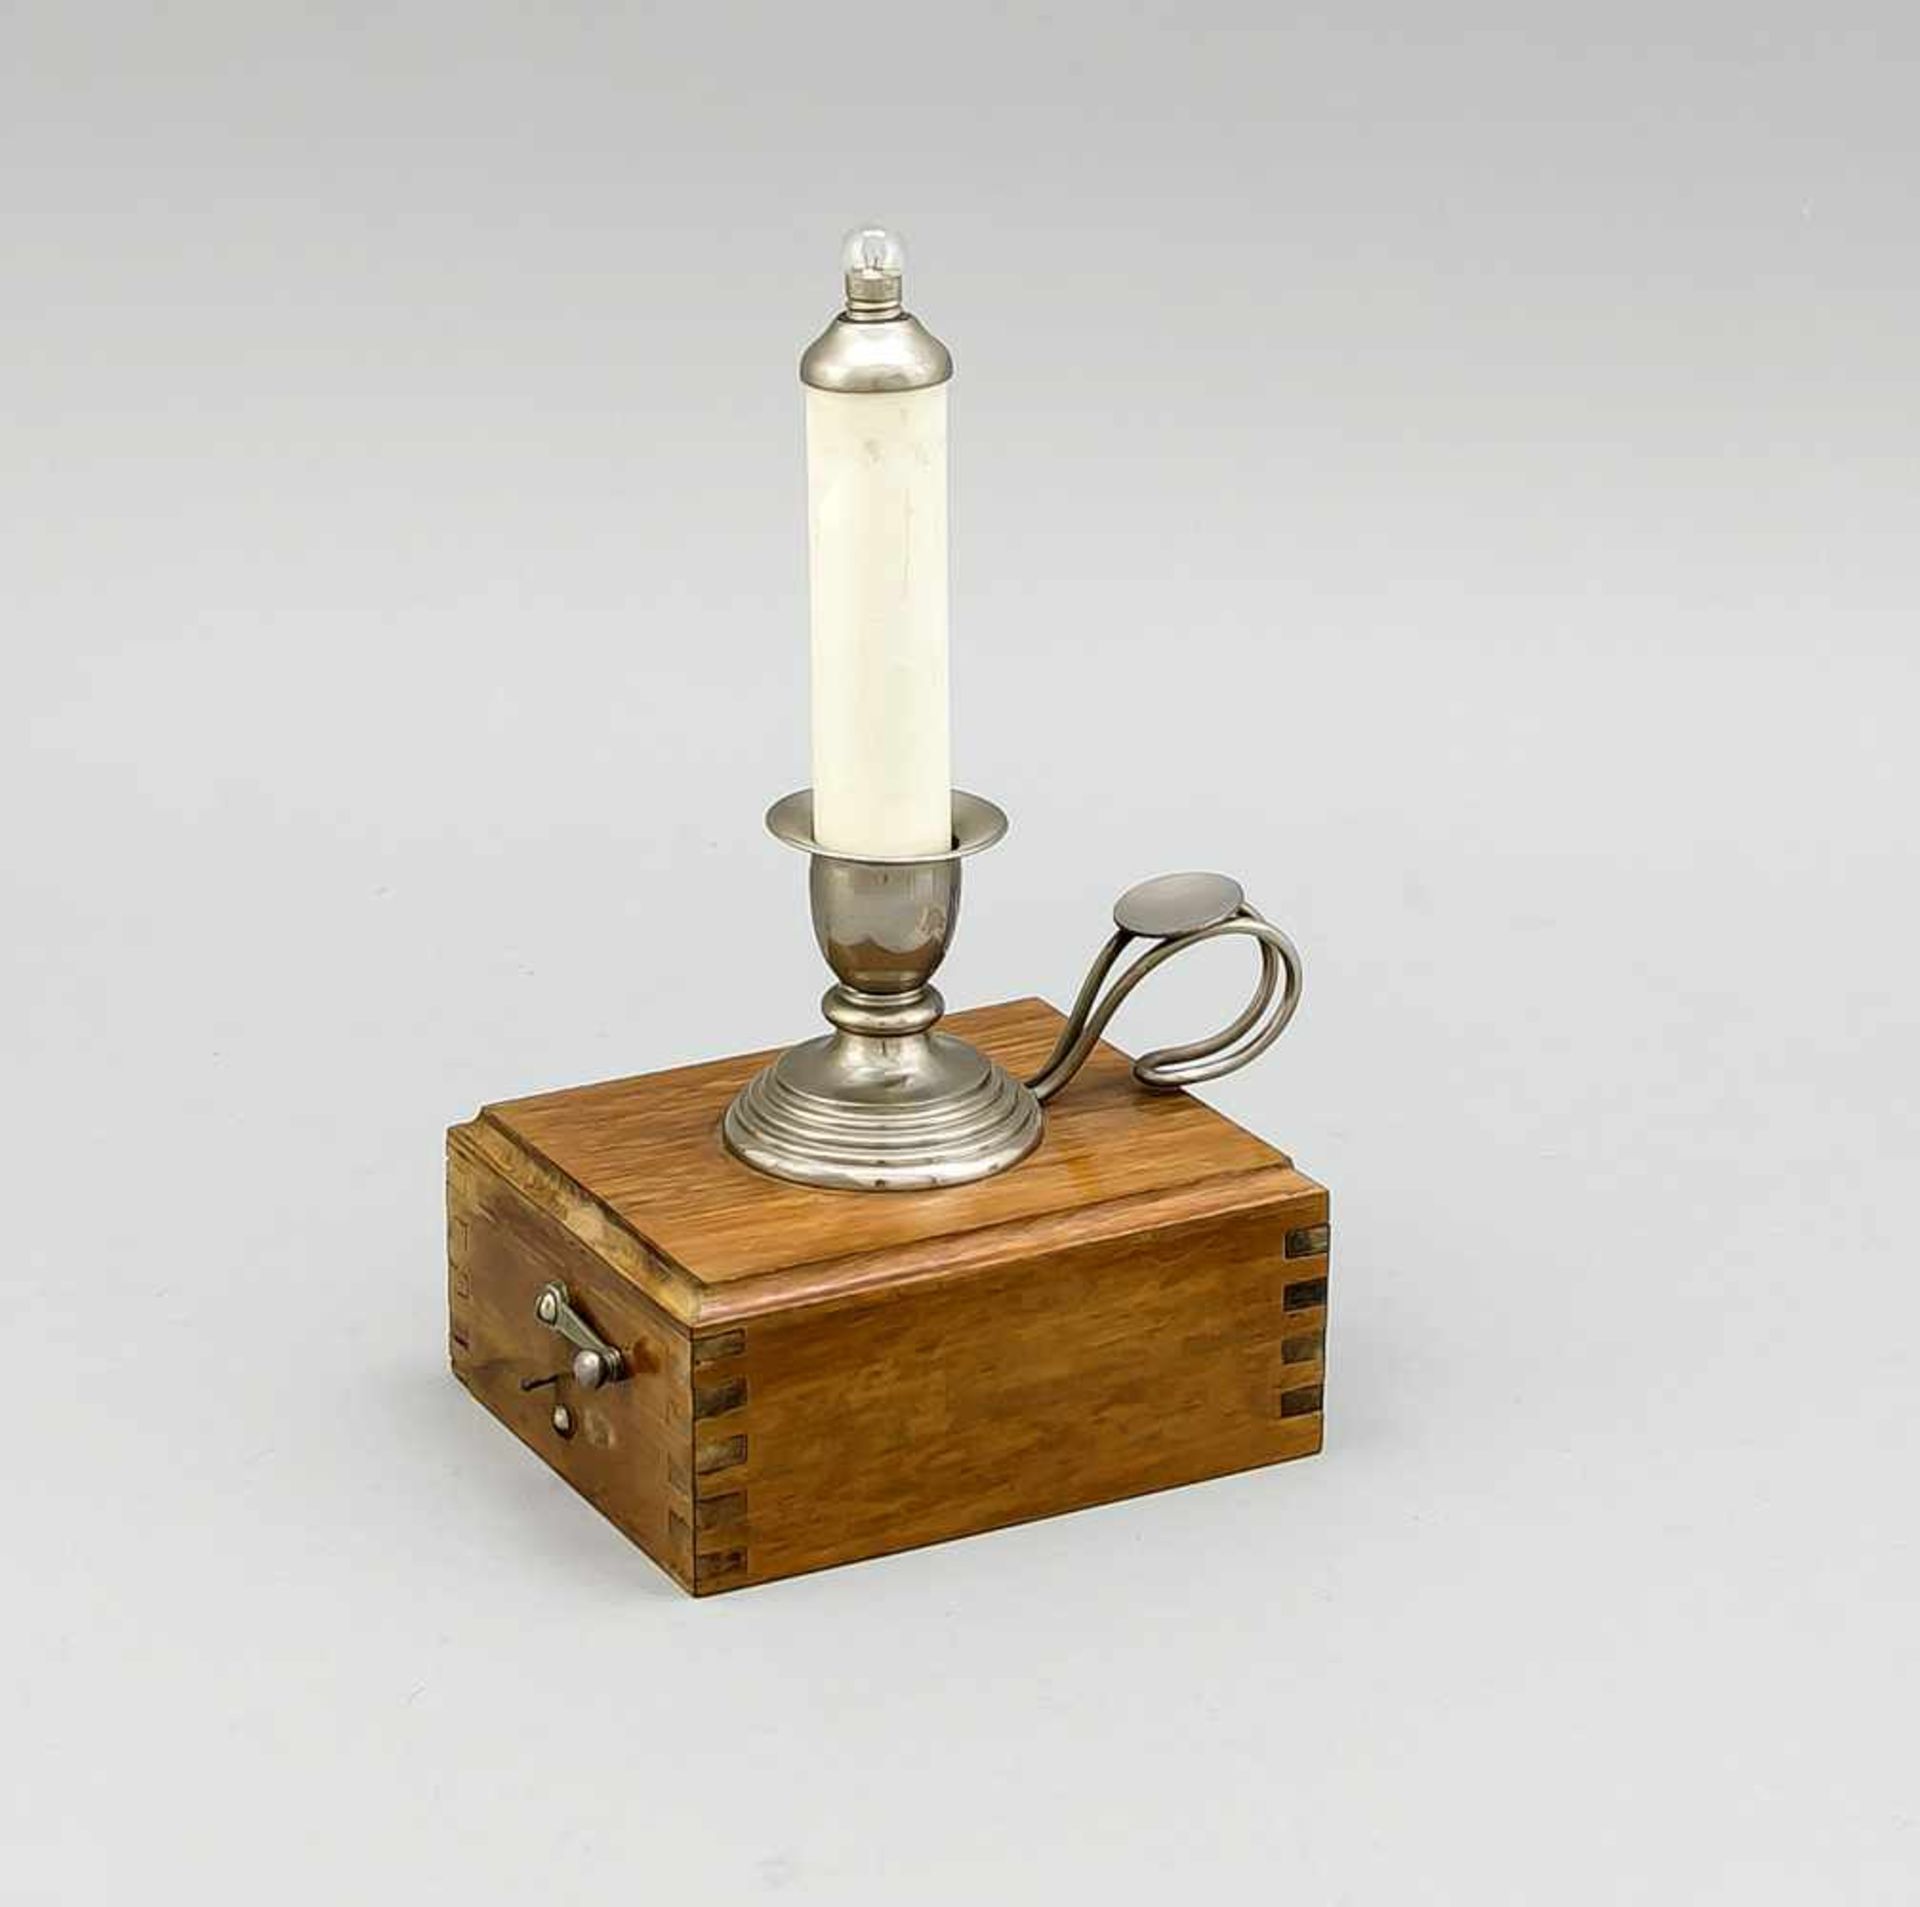 Nachttischlämpchen in Form eines Handleuchters, elektr., 1. H. 20. Jh., Holzgehäuse